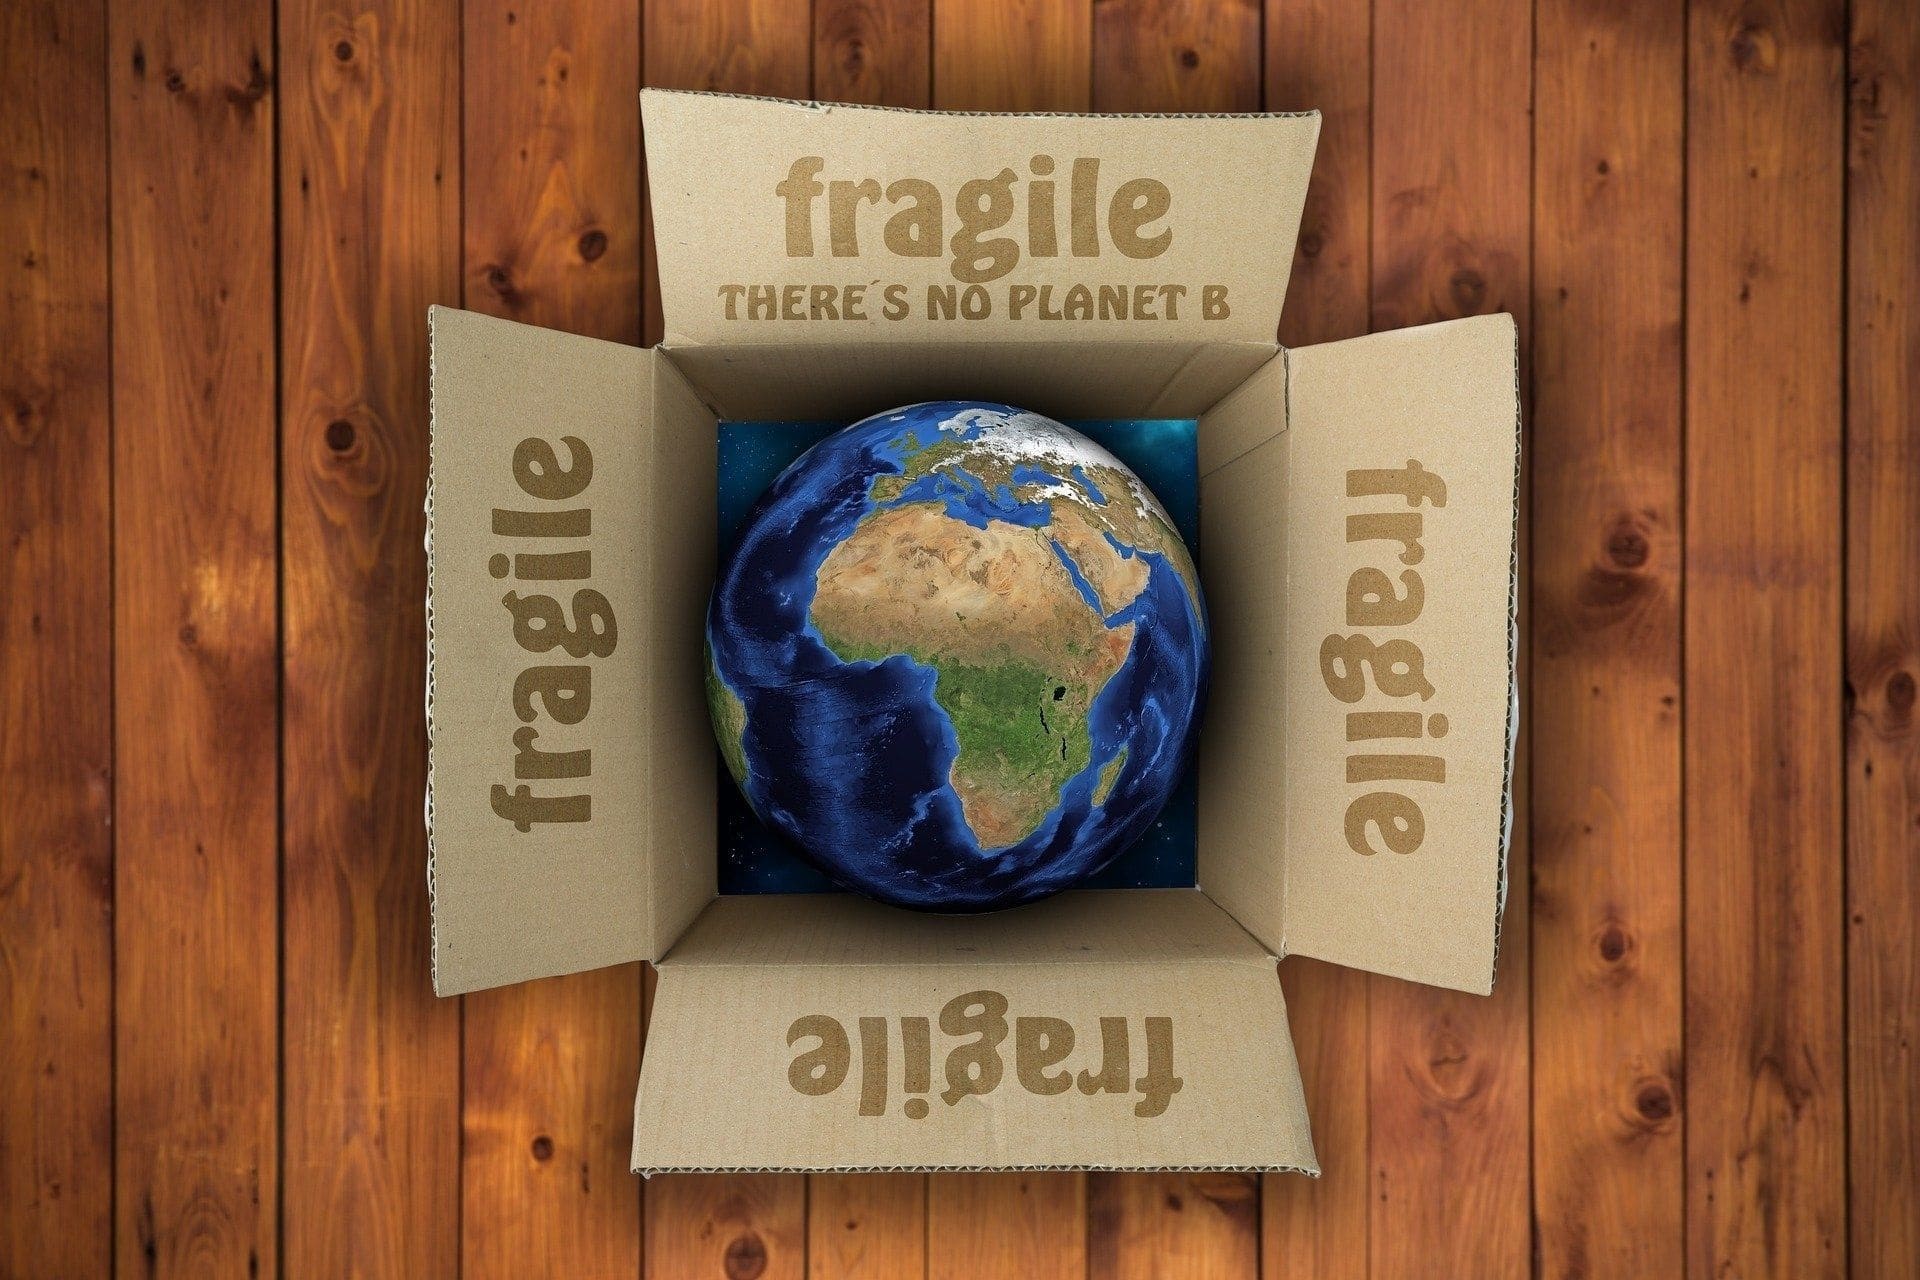 e-commerce international globe terrestre dans un carton ouvert avec écrit "fragile"